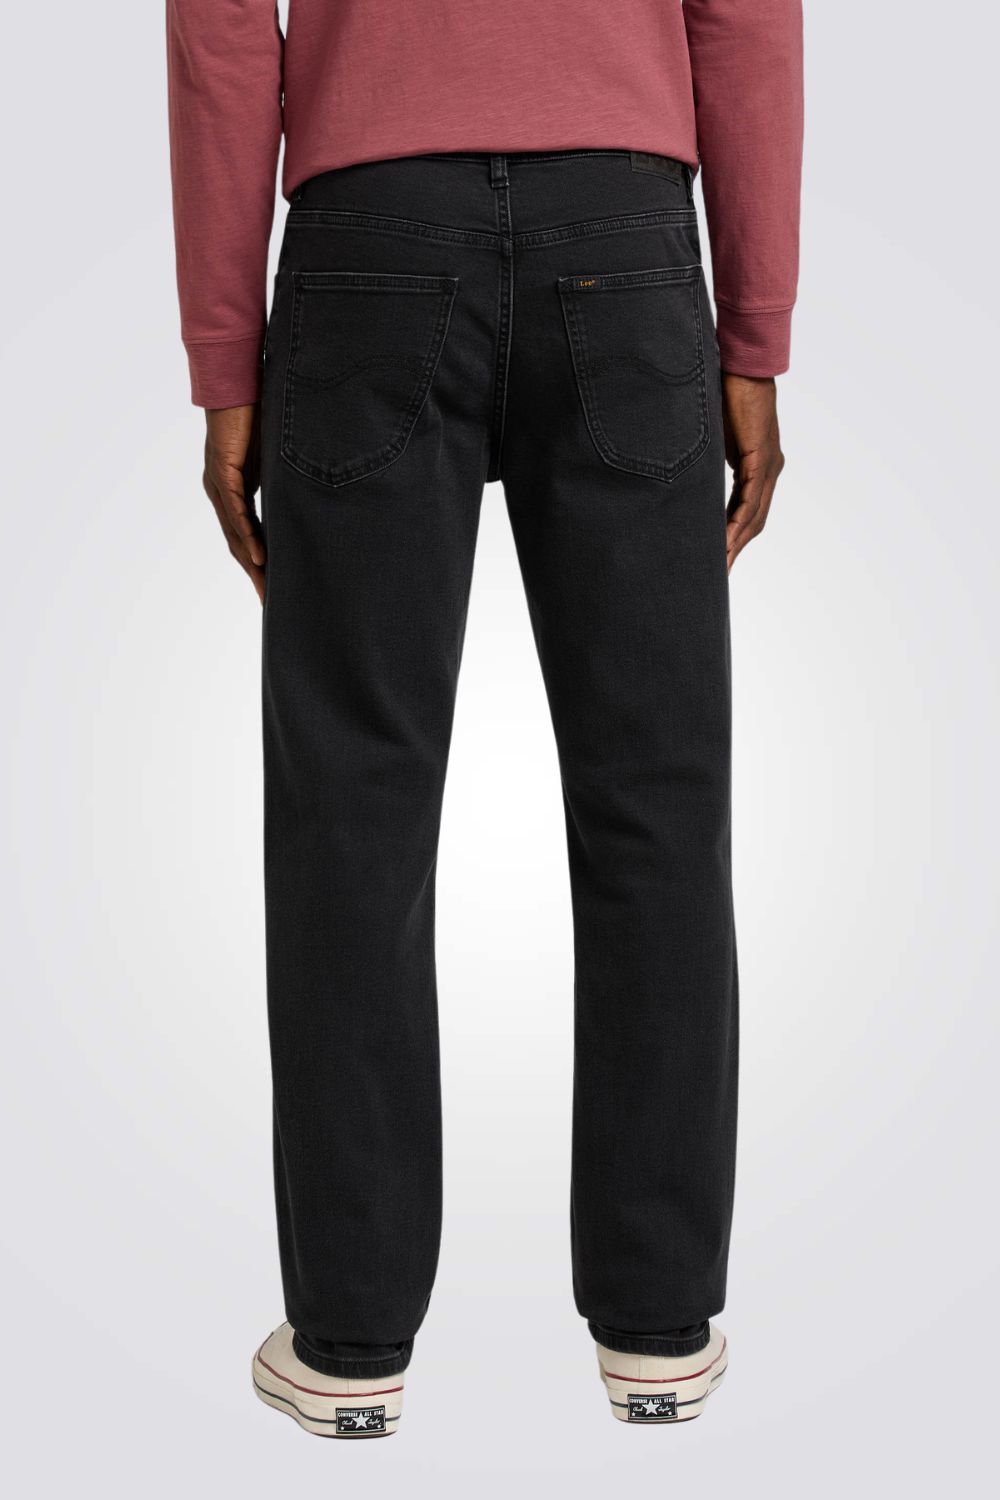 ג'ינס לגברים בצבע שחור